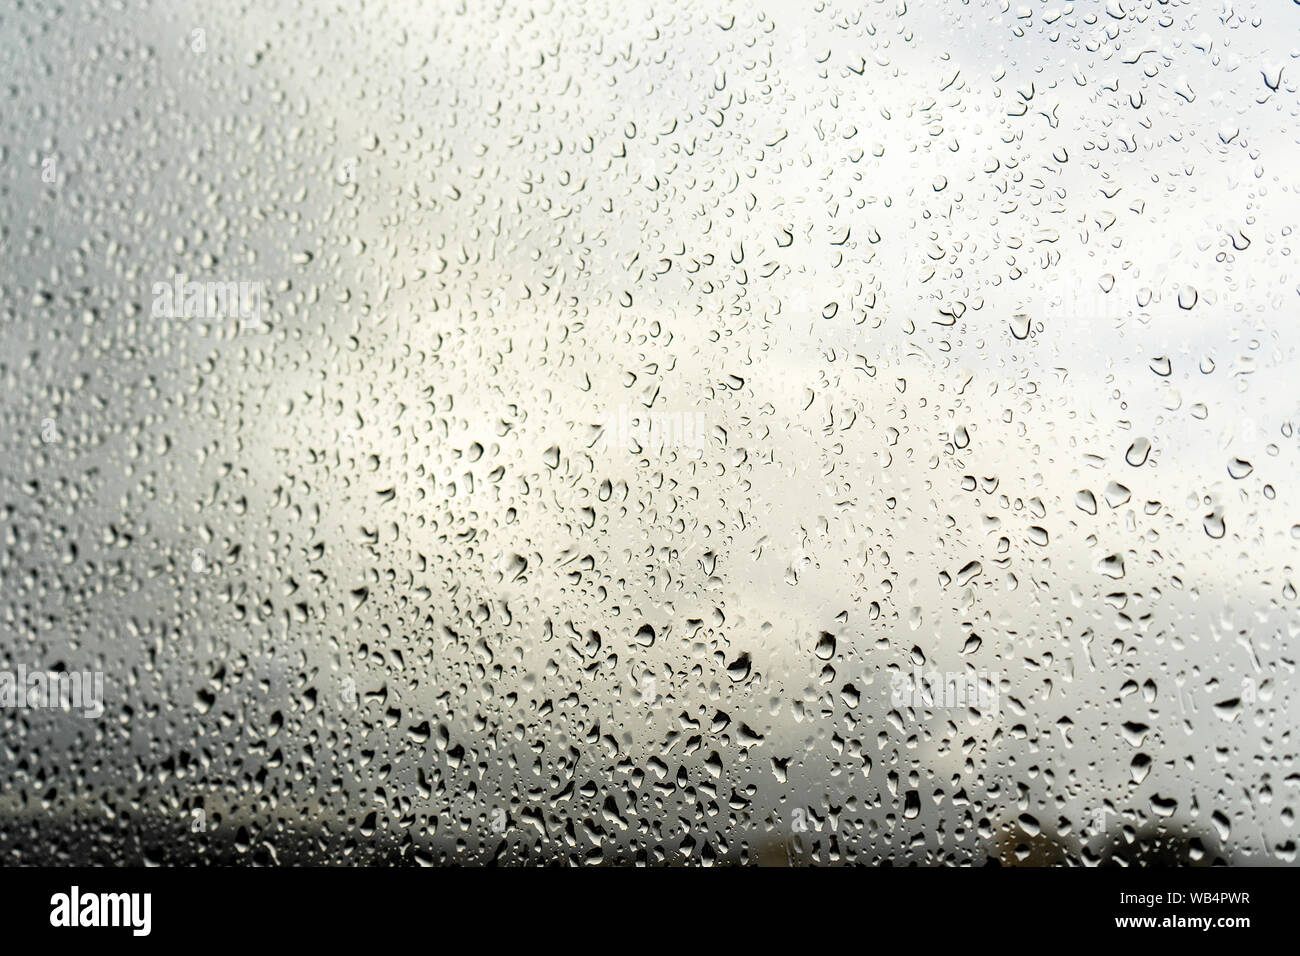 Gouttes de pluie sur la fenêtre. Paysage à travers le verre humide. Métaphore de la mauvaise humeur, la dépression et la tristesse Banque D'Images